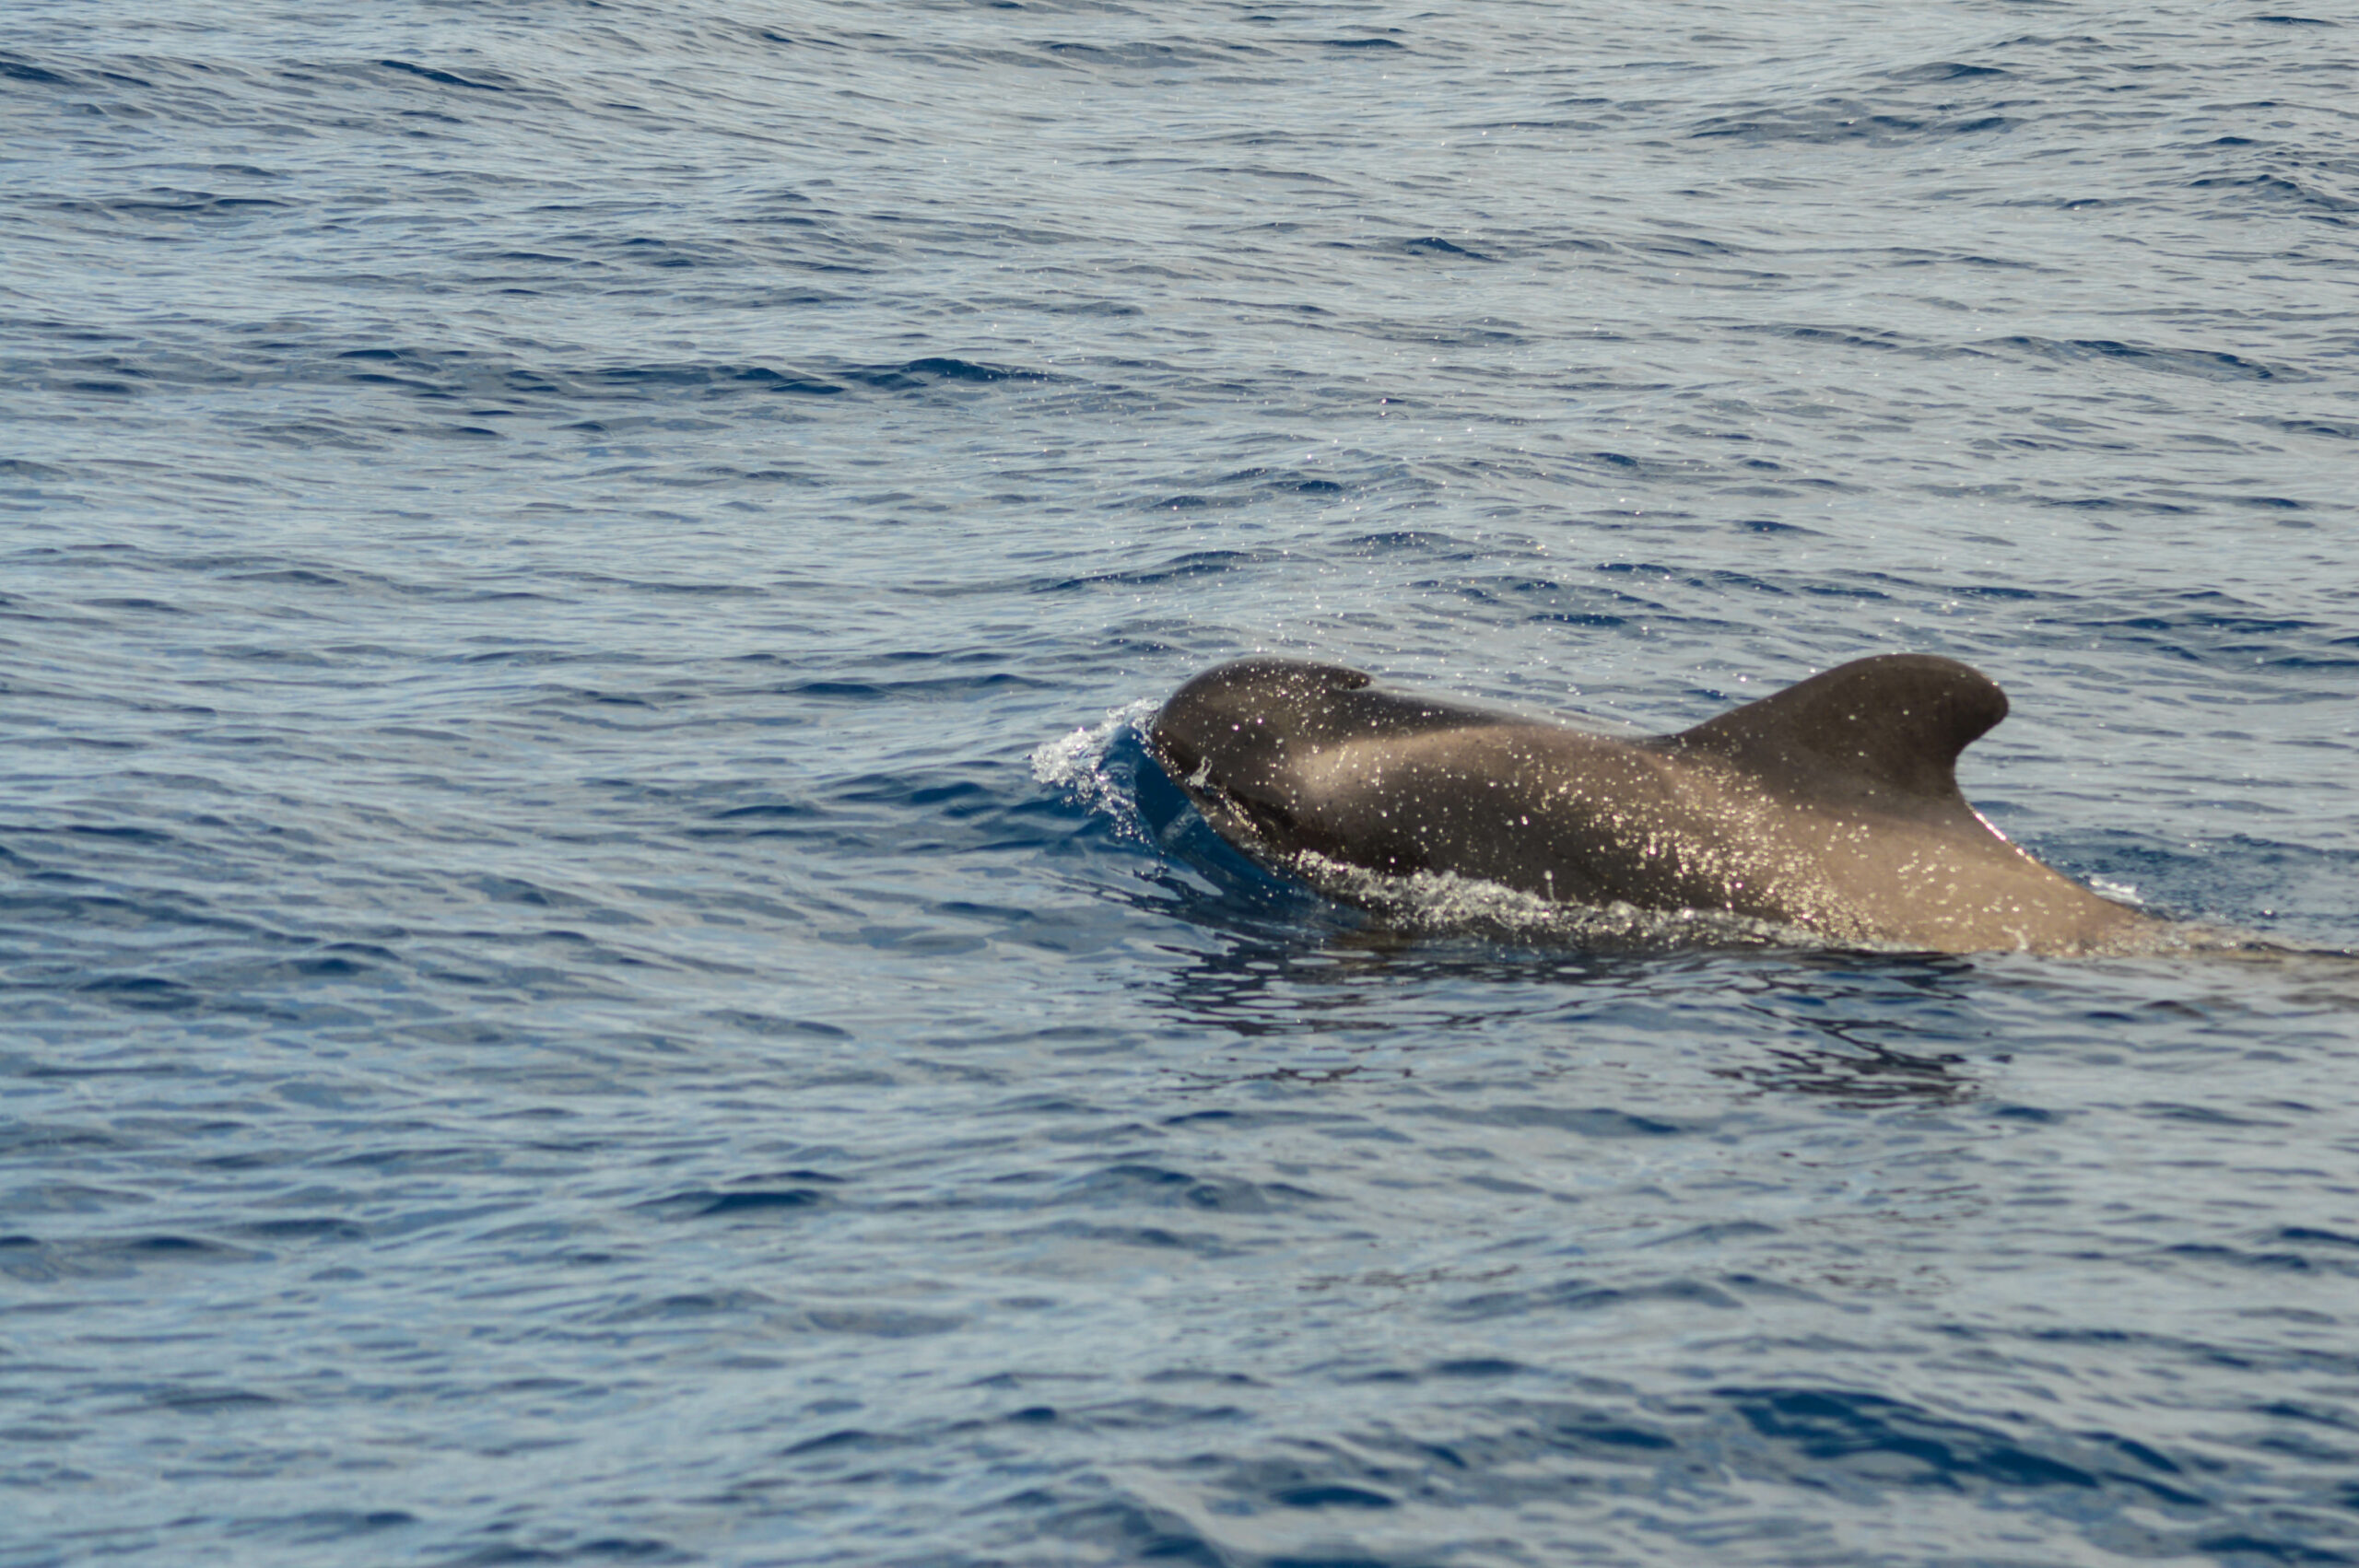 Tête, aileron et dos d'une baleine pilote, noire, en train de sortir de l'eau